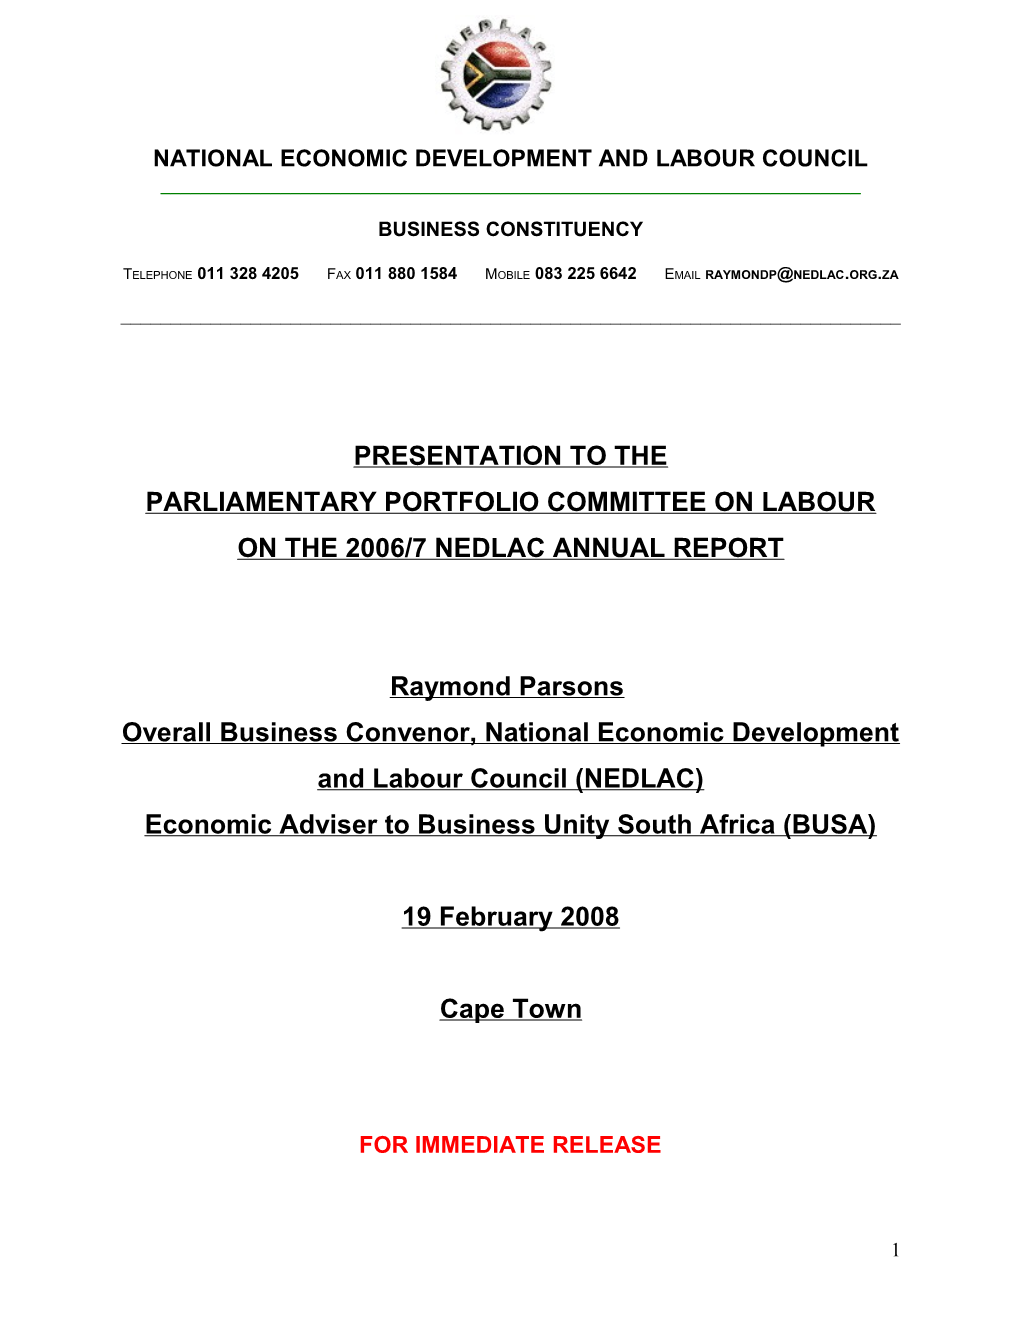 National Economic Development and Labour Council